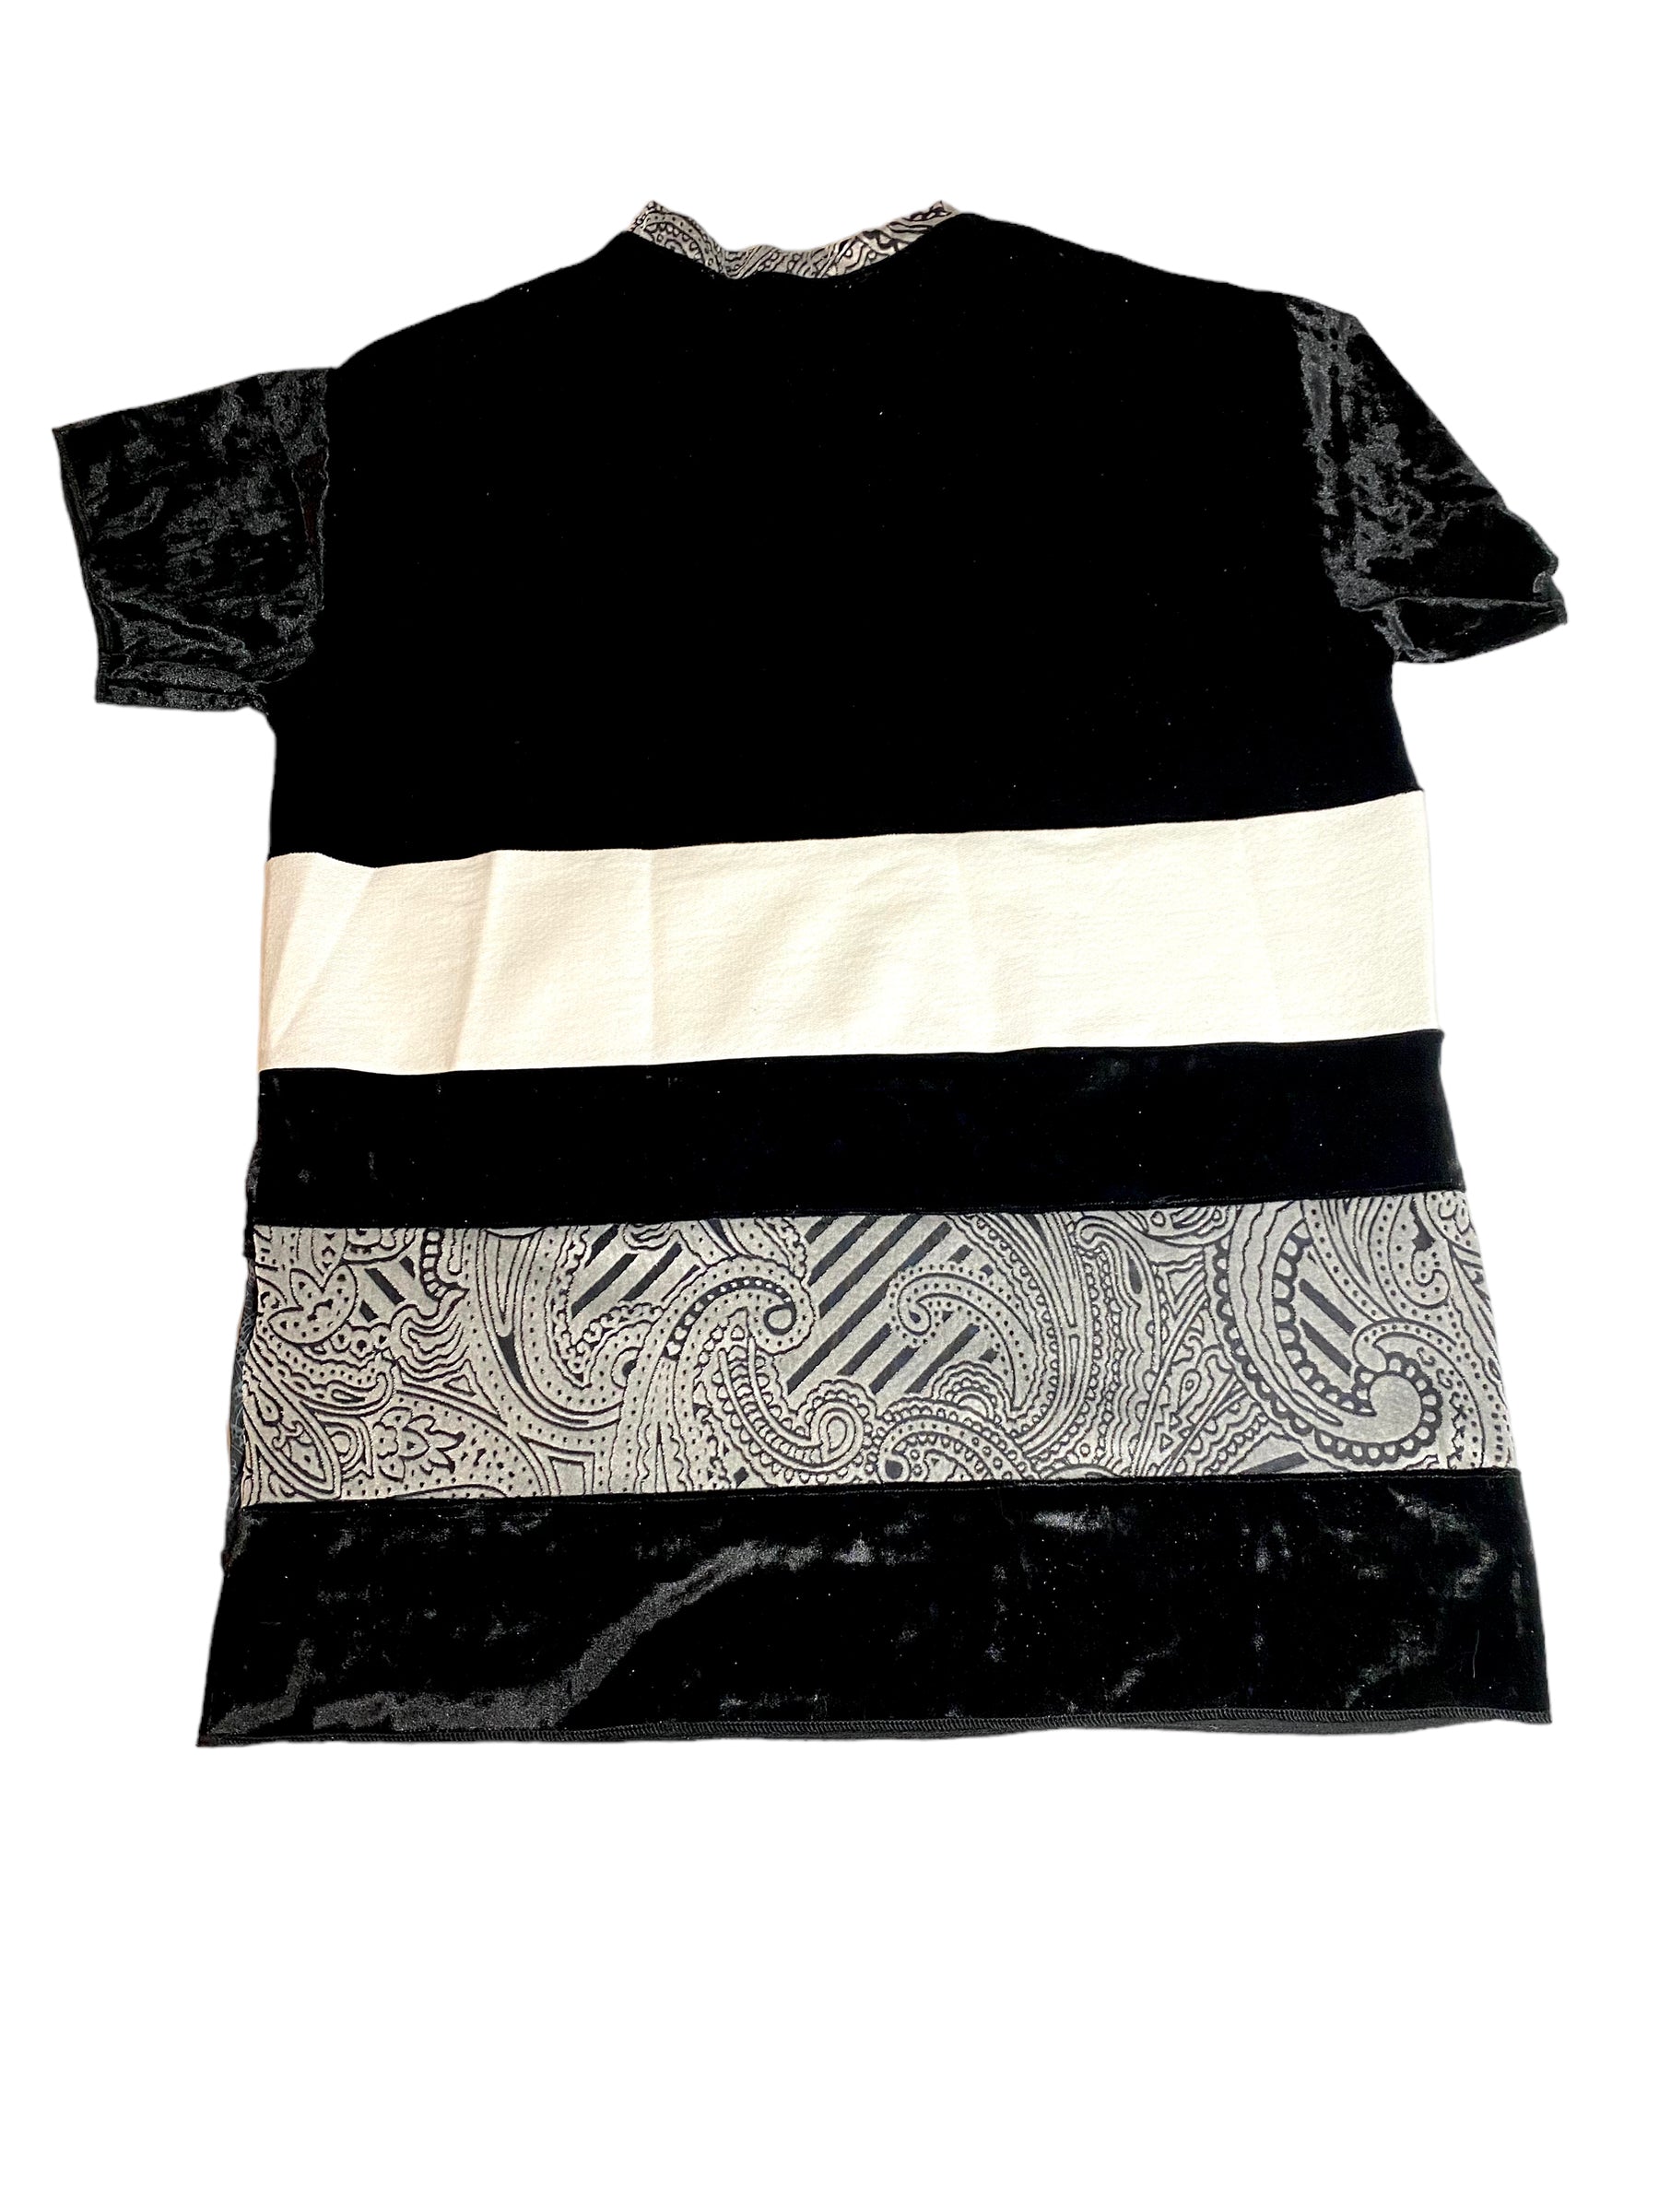 Color Block unisex T-Shirt (LG)